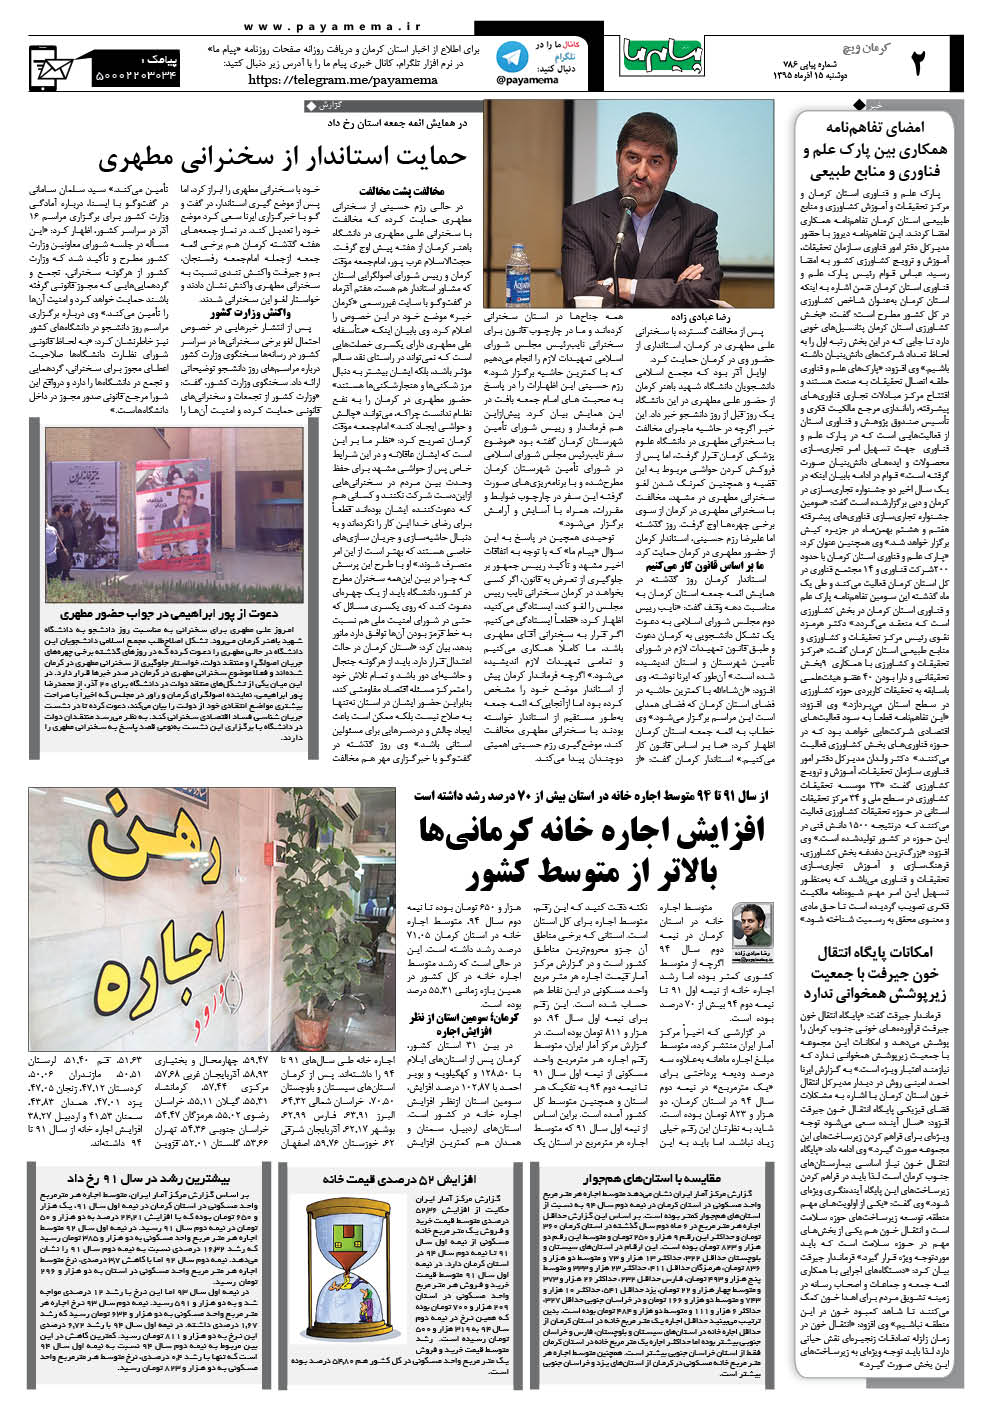 صفحه کرمان ویچ شماره 786 روزنامه پیام ما